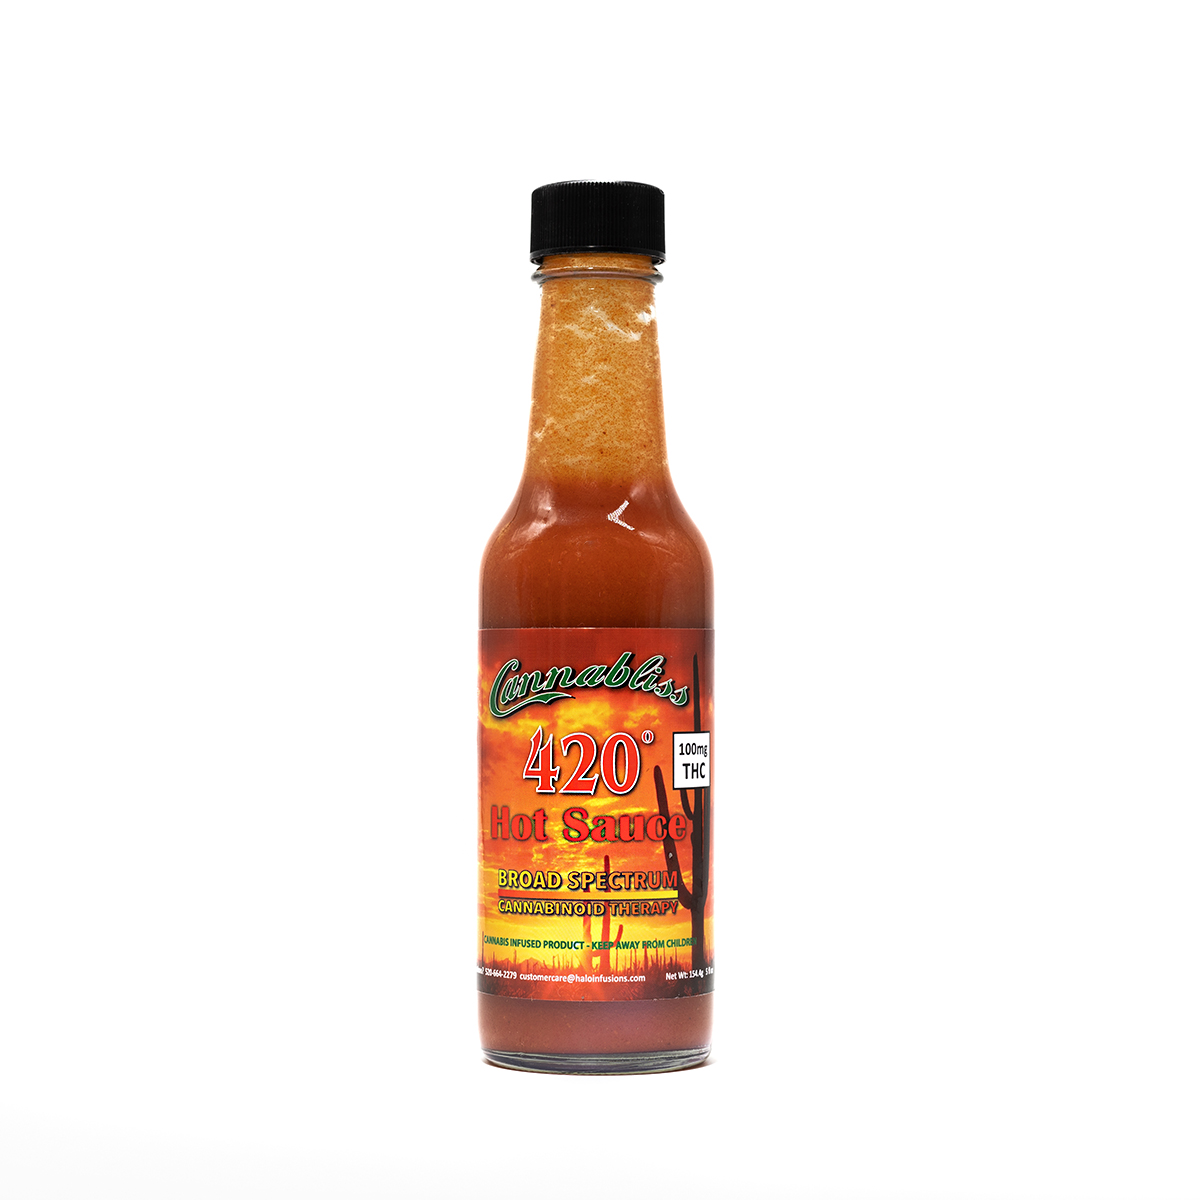 Cannabliss 420 hot sauce